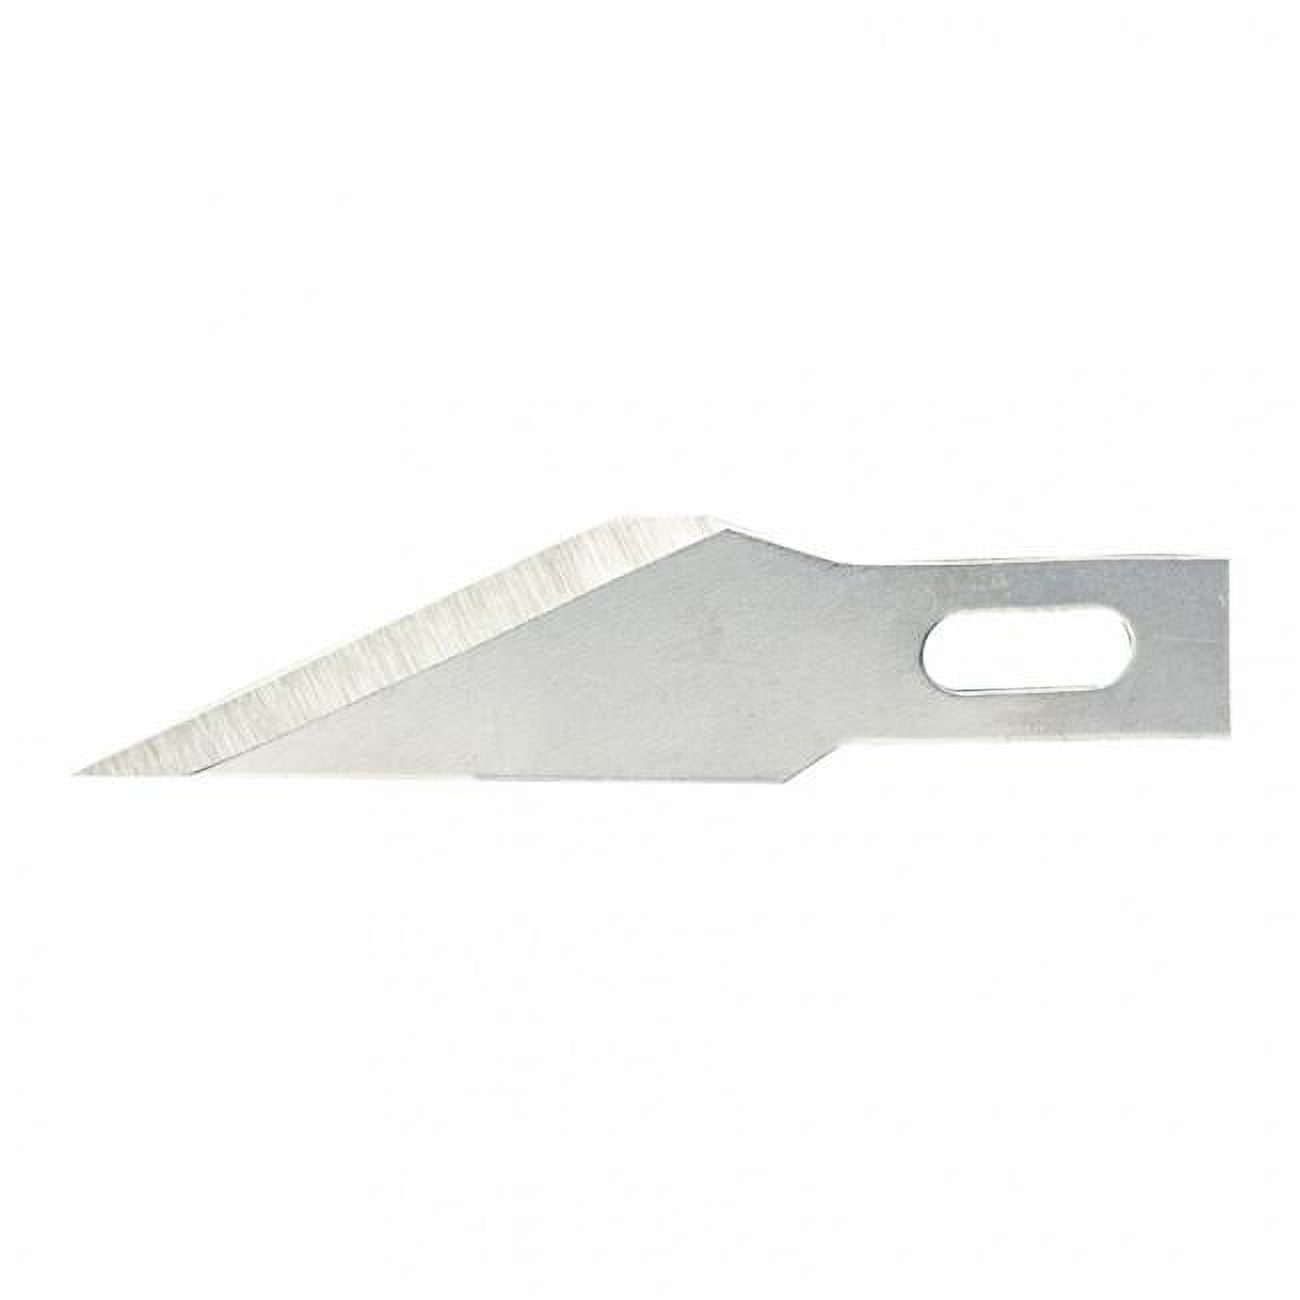 Vjp06003 11 Fine Blades For 1 Handle - Pack Of 5